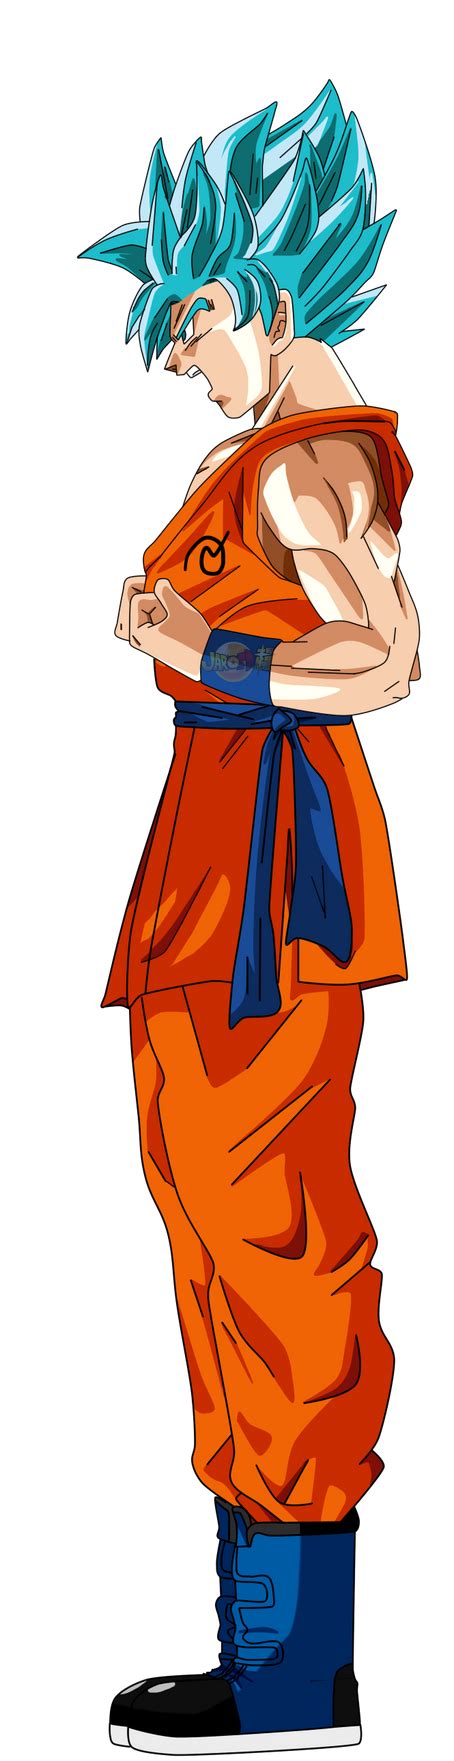 Goku Ssj Dios Face 2 De Lado By Jaredsongohan On Deviantart